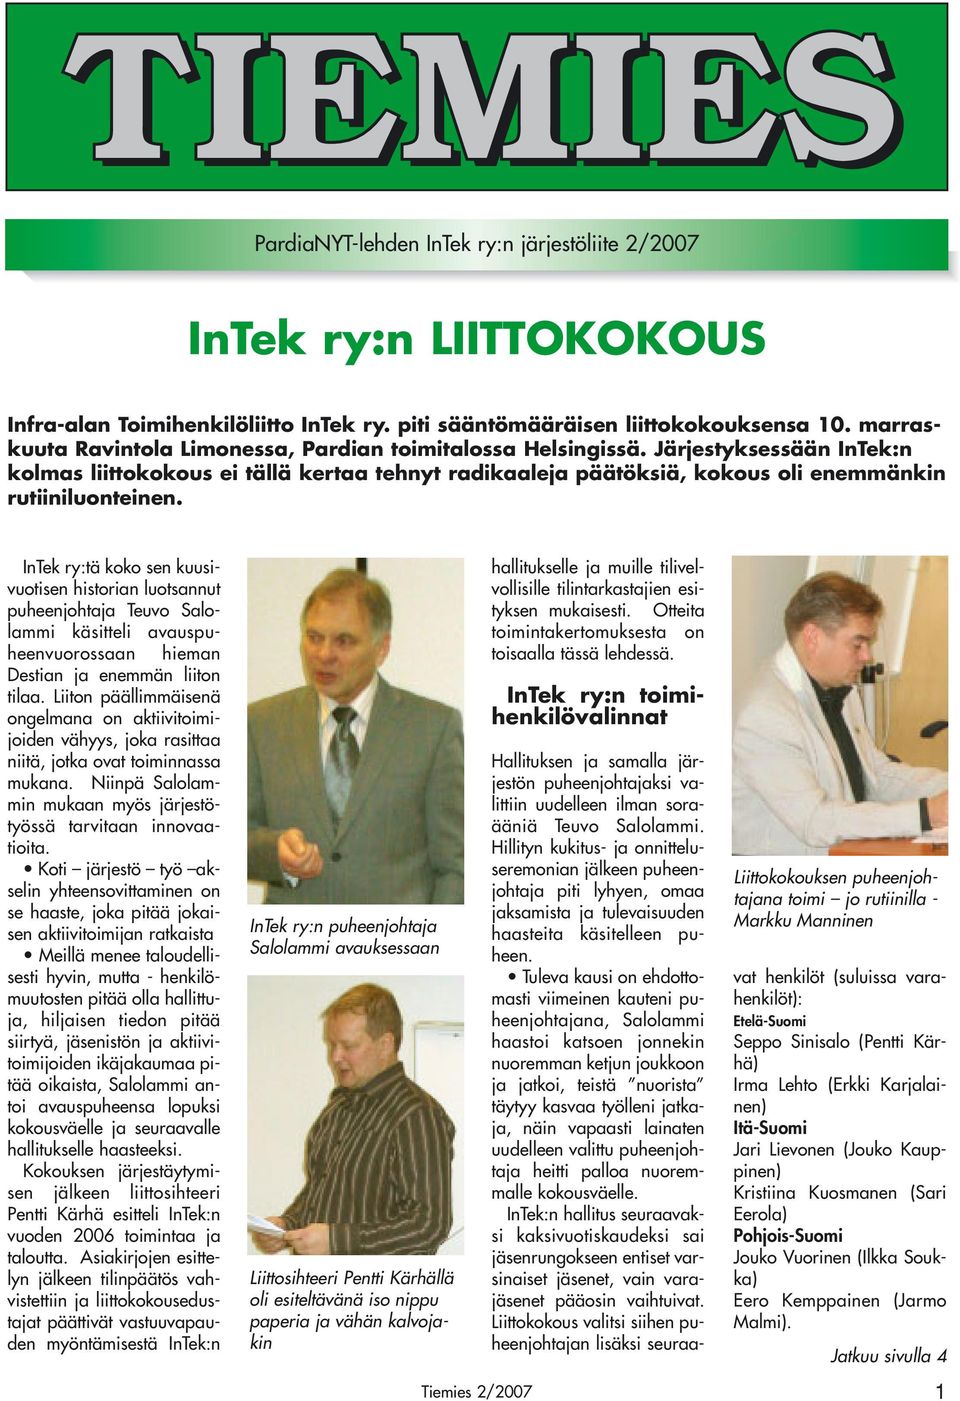 InTek ry:tä koko sen kuusivuotisen historian luotsannut puheenjohtaja Teuvo Salolammi käsitteli avauspuheenvuorossaan hieman Destian ja enemmän liiton tilaa.